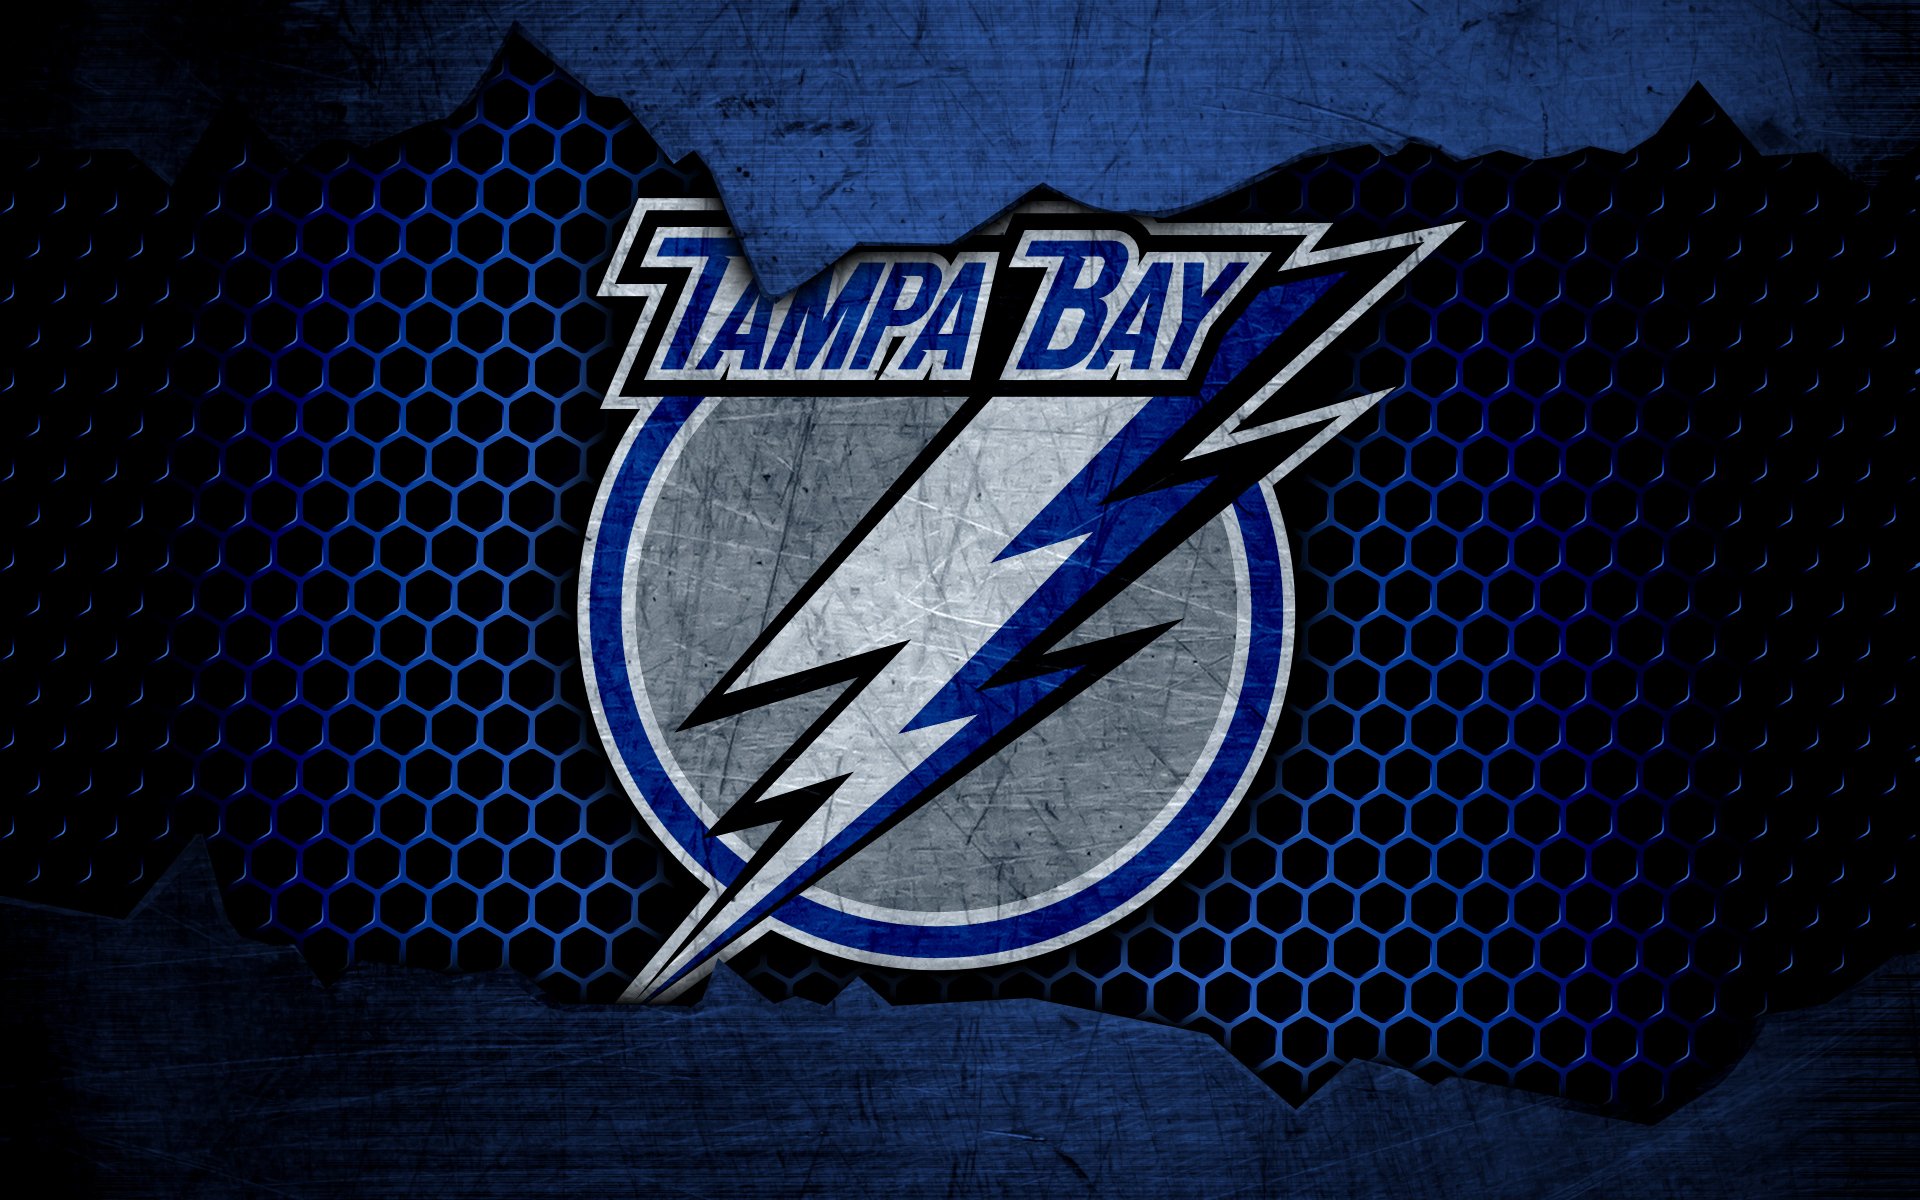 Tampa Bay Lightning 4k Ultra HD Wallpaper